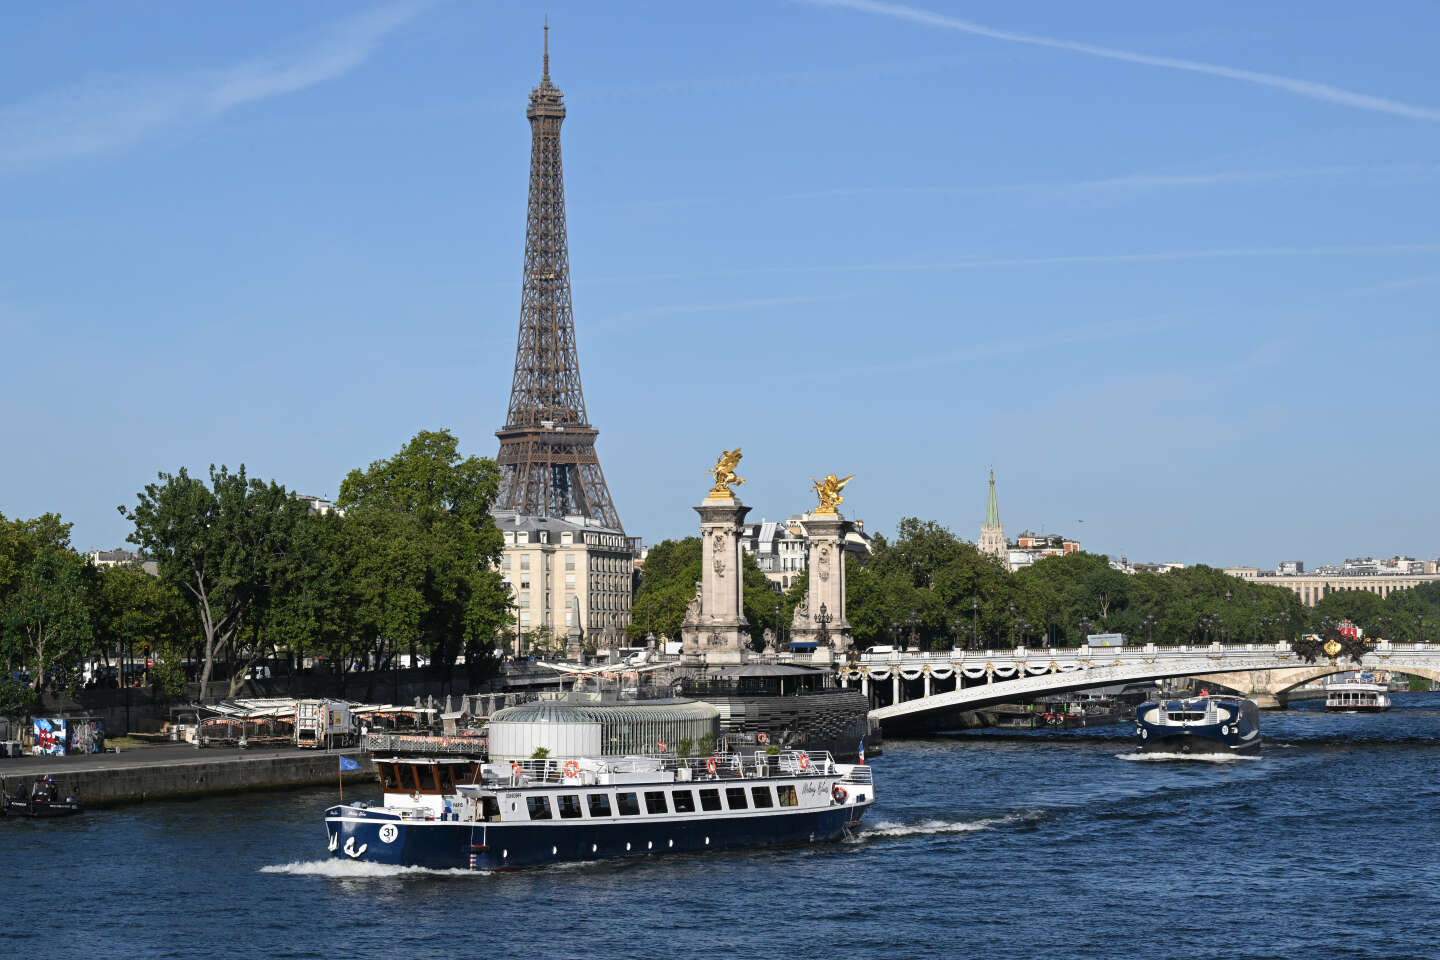 Cérémonie d’ouverture de Paris 2024 : les pouvoirs publics penchent pour environ 300 000 spectateurs en accès gratuit